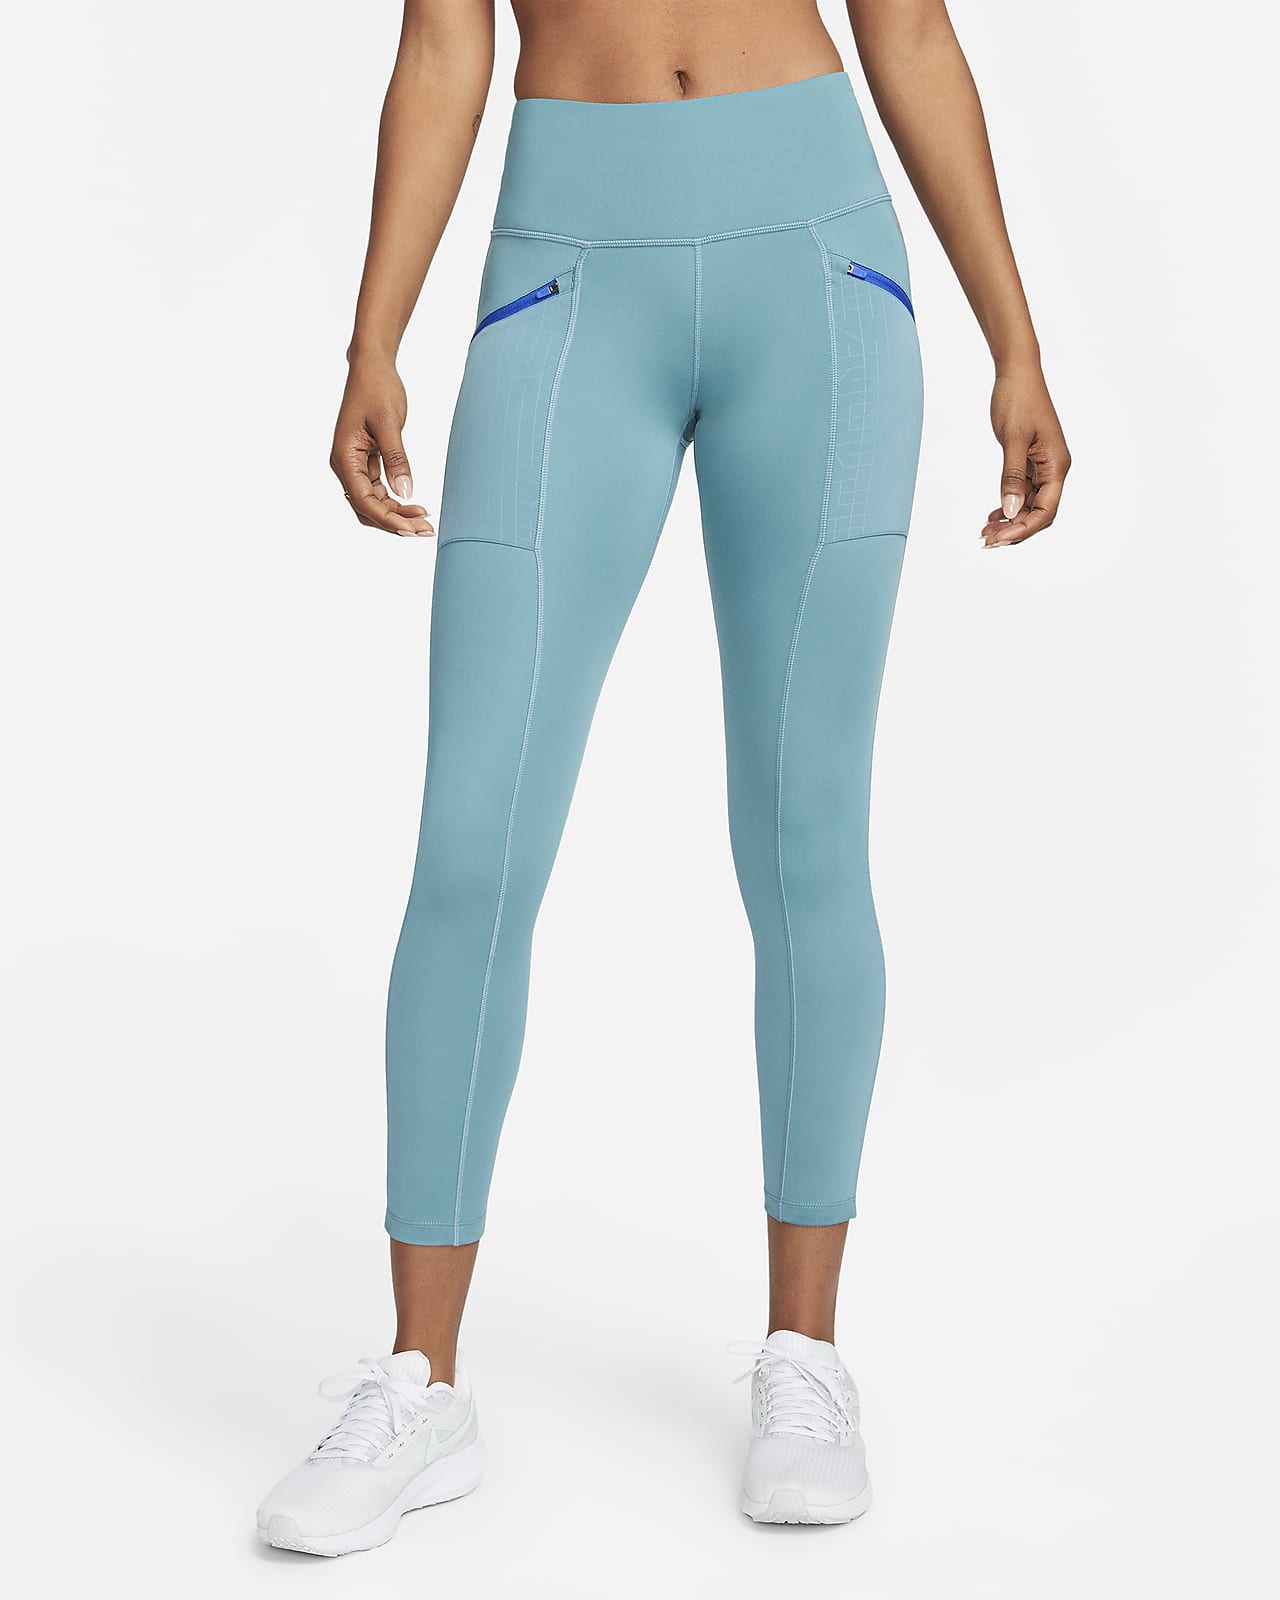 Nike Womens Running Mid-rise Pocket Leggings - Blue